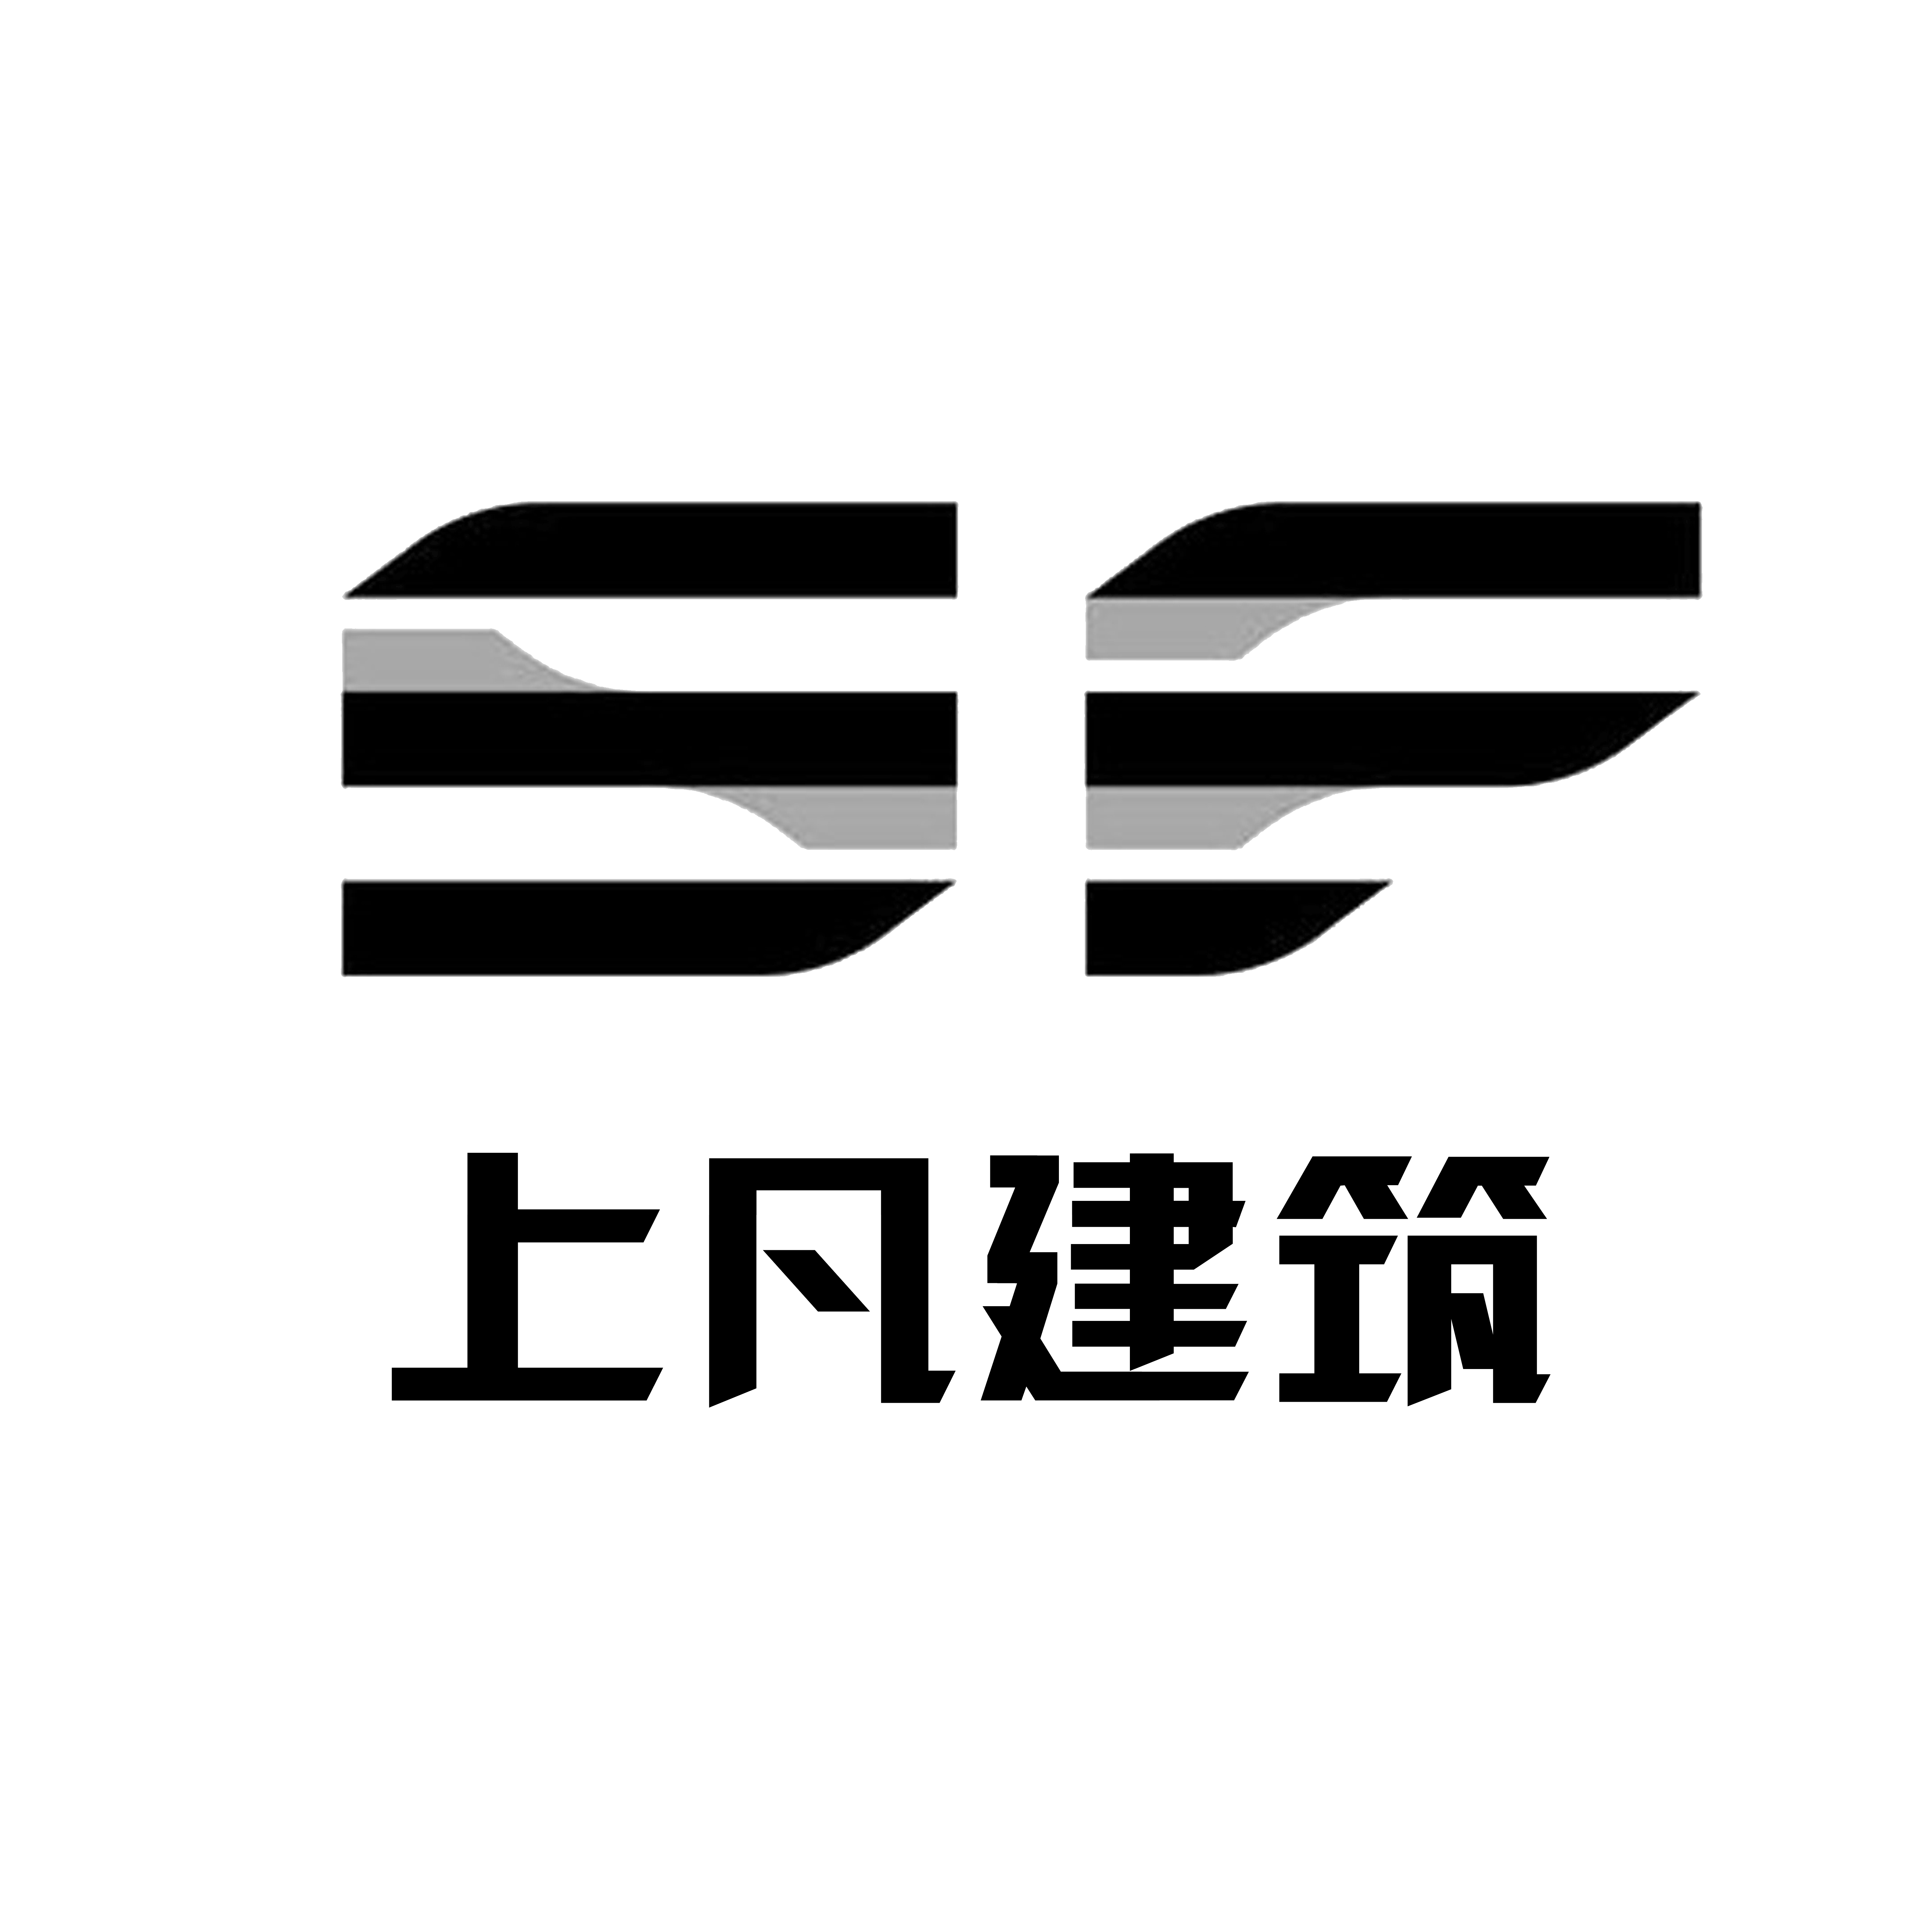 四川上凡建筑工程有限公司的logo